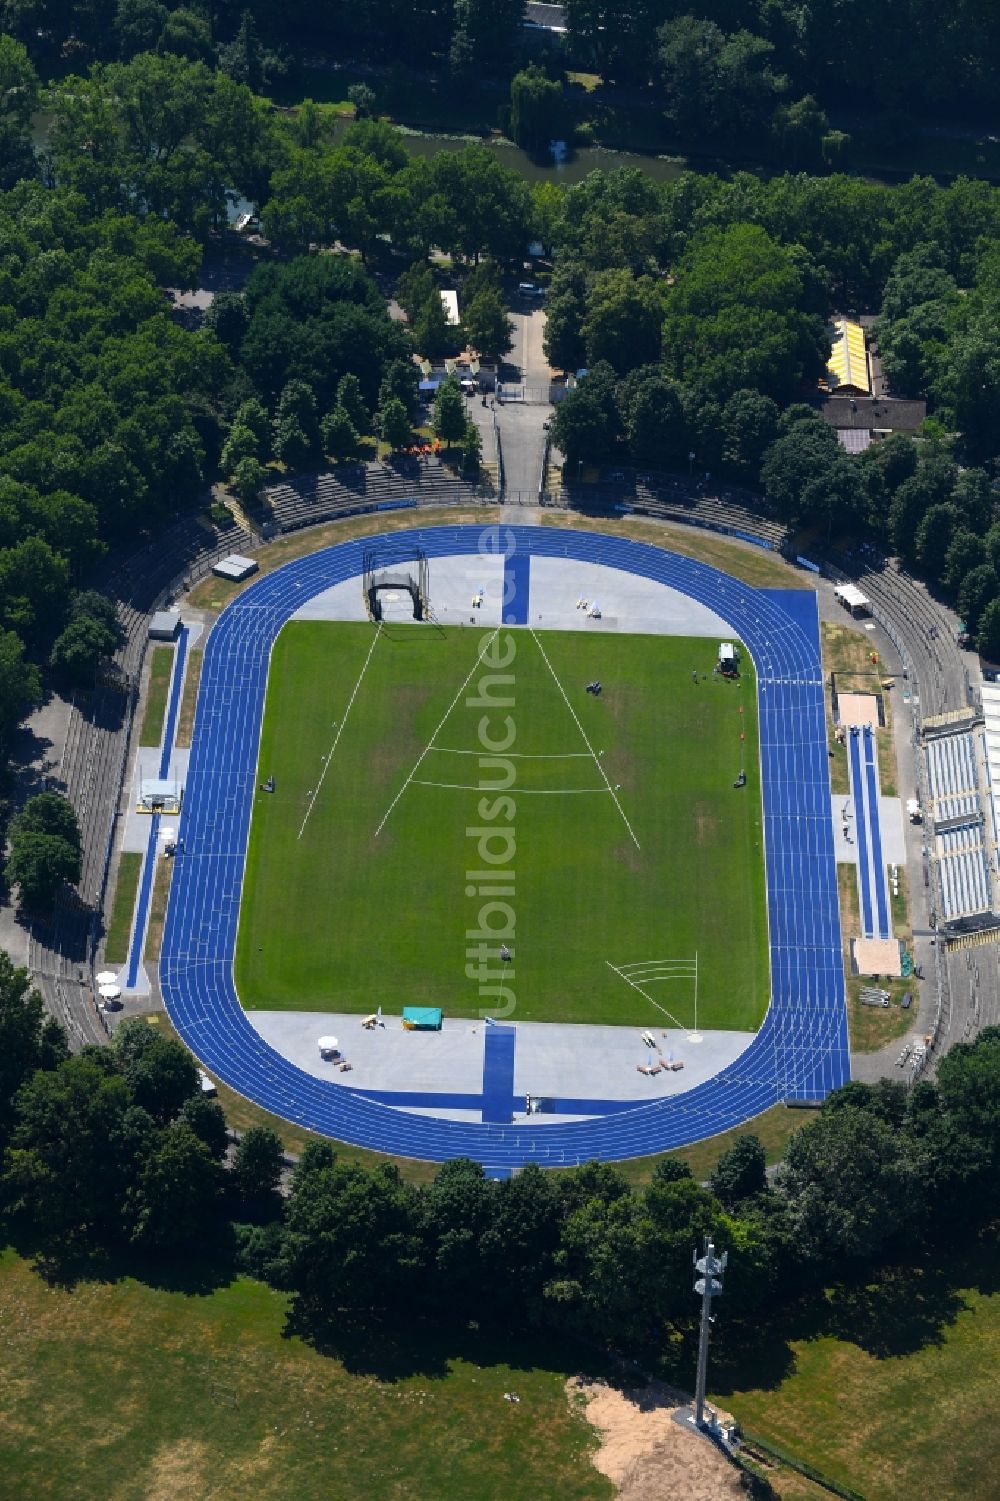 Heilbronn von oben - Sportplatz- Fussballplatz des VfR Heilbronn in Heilbronn im Bundesland Baden-Württemberg, Deutschland